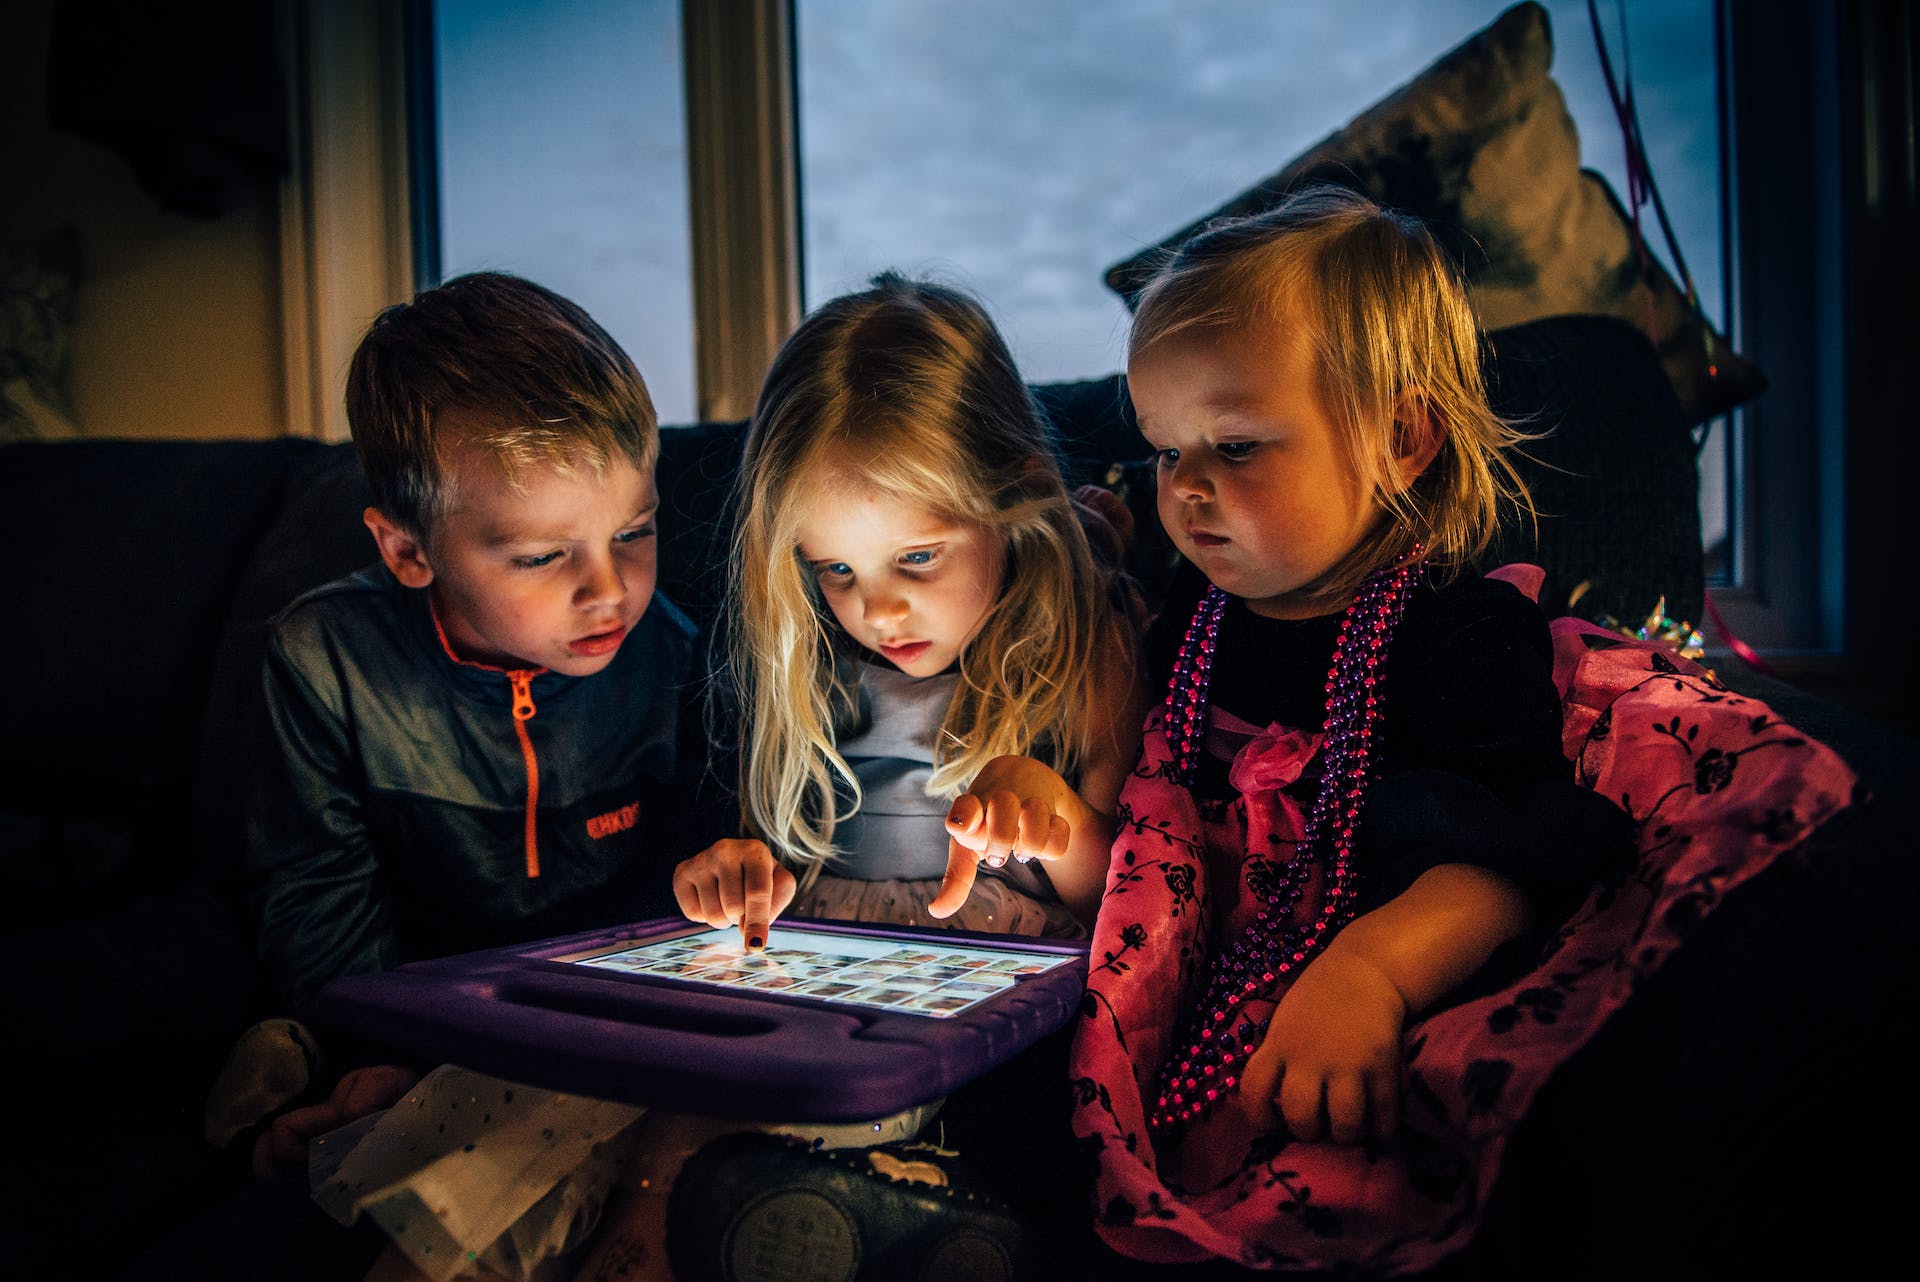 Trois enfants regardant une tablette | Source : Pexels